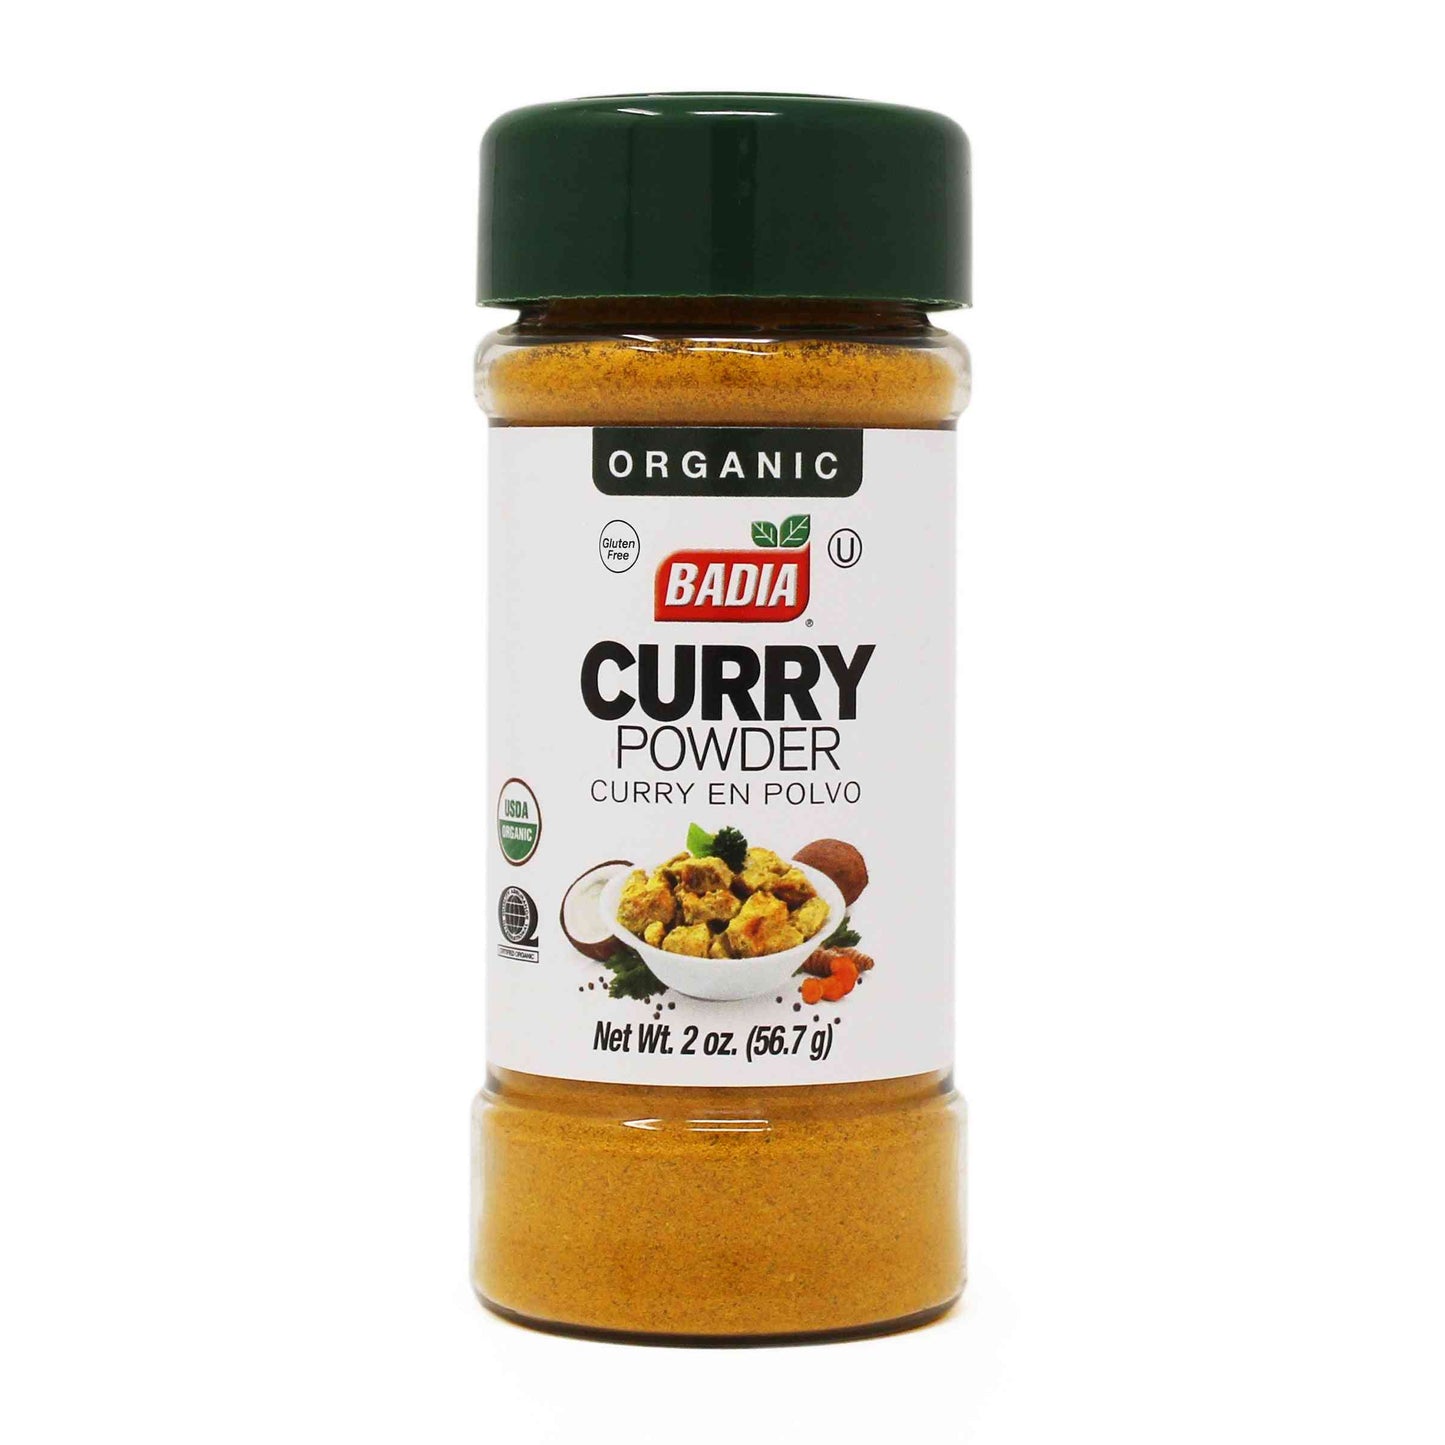 Badia Organic Curry Powder -2oz